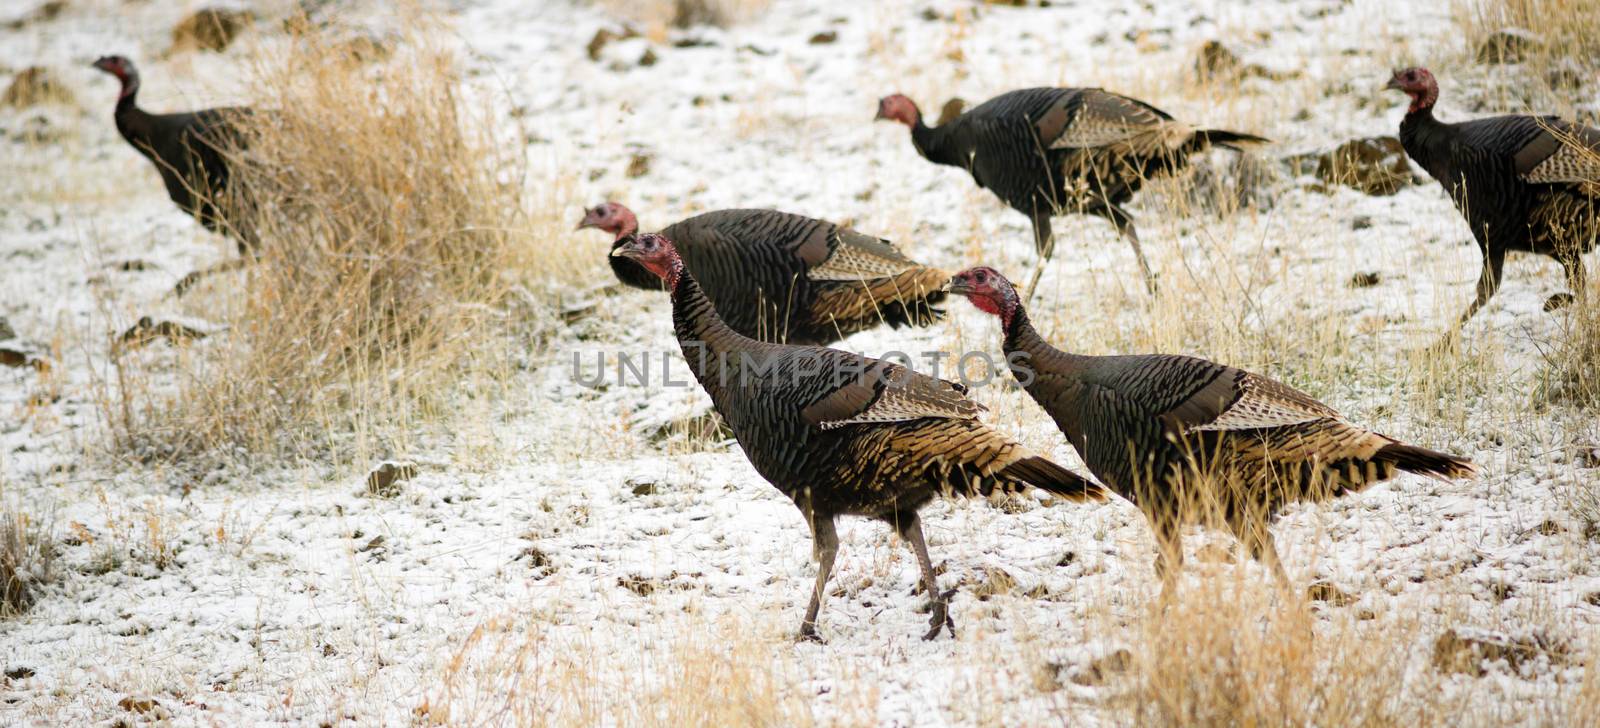 Wild Animal Turkey Game Birds Peck Frozen Ground Feeding by ChrisBoswell